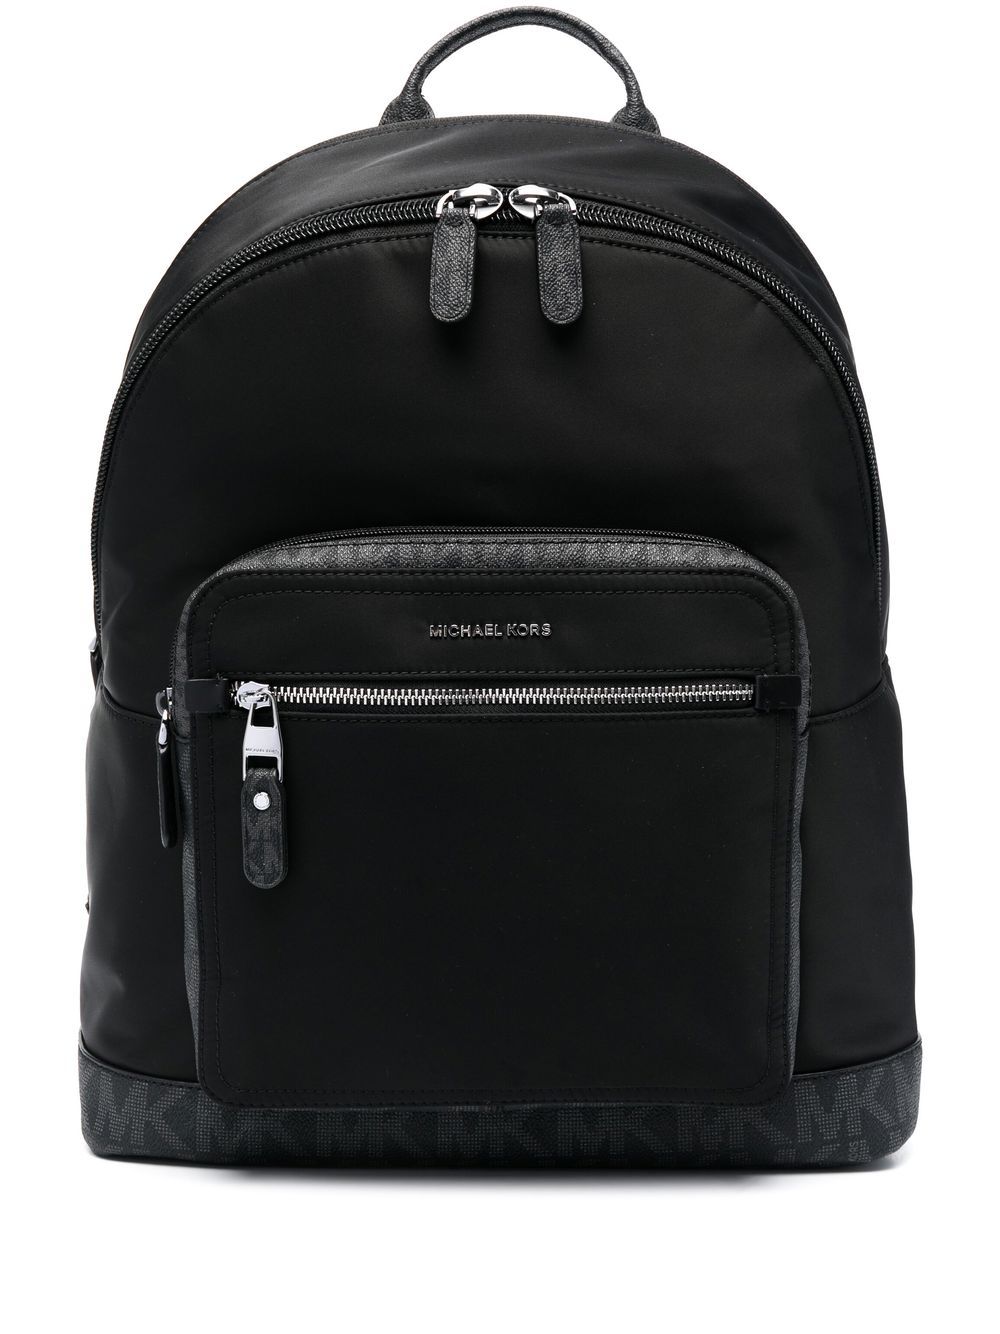 Michael Kors backpack men hudson 33U2LHDB2B Black lined interior knapsack